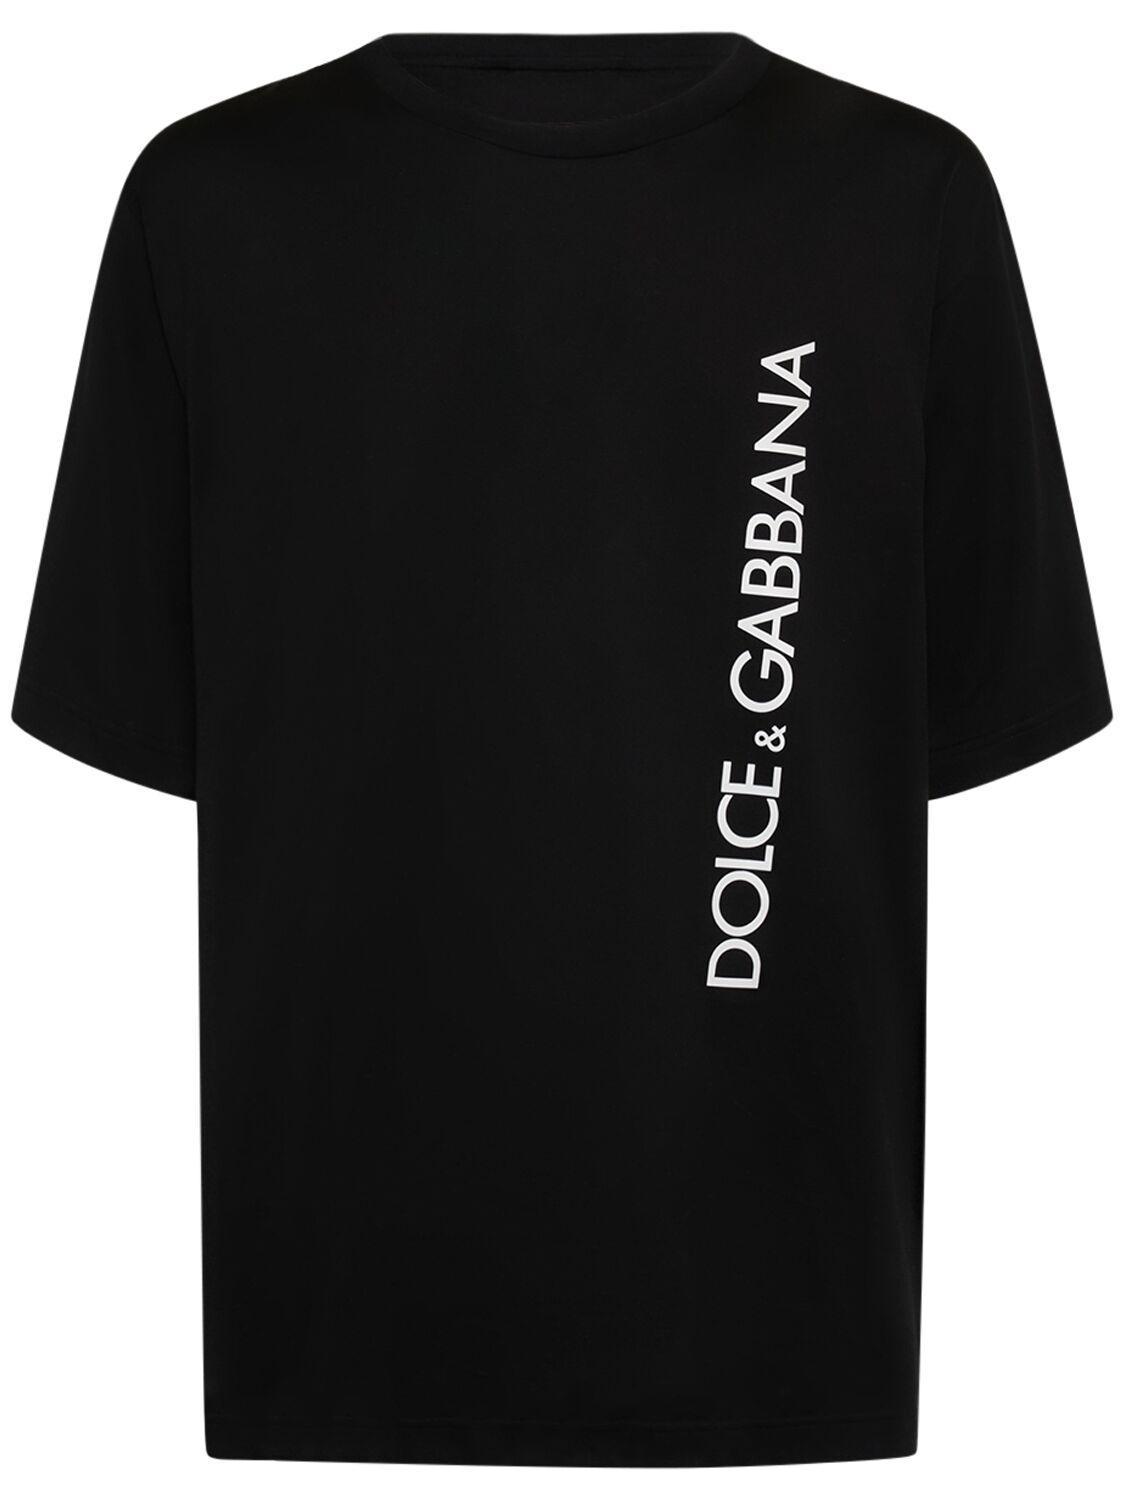 Dolce & Gabbana T-shirt Aus Baumwolljersey Mit Logo In Schwarz